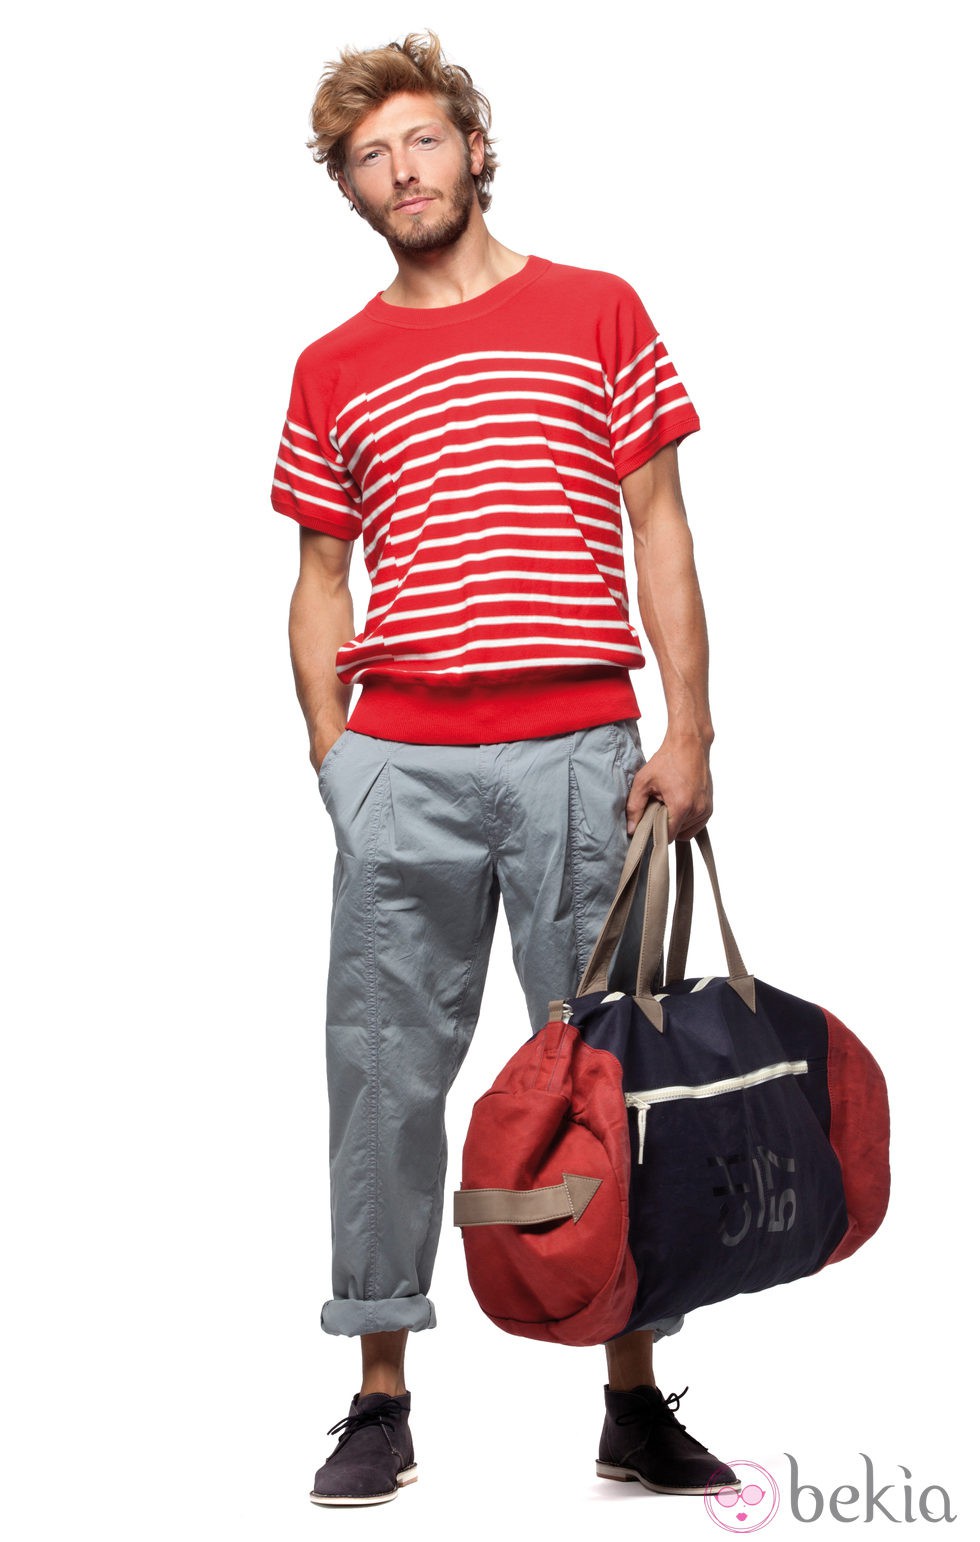 Camiseta roja de rayas con pantalón gris de la colección verano 2012 de Chevignon